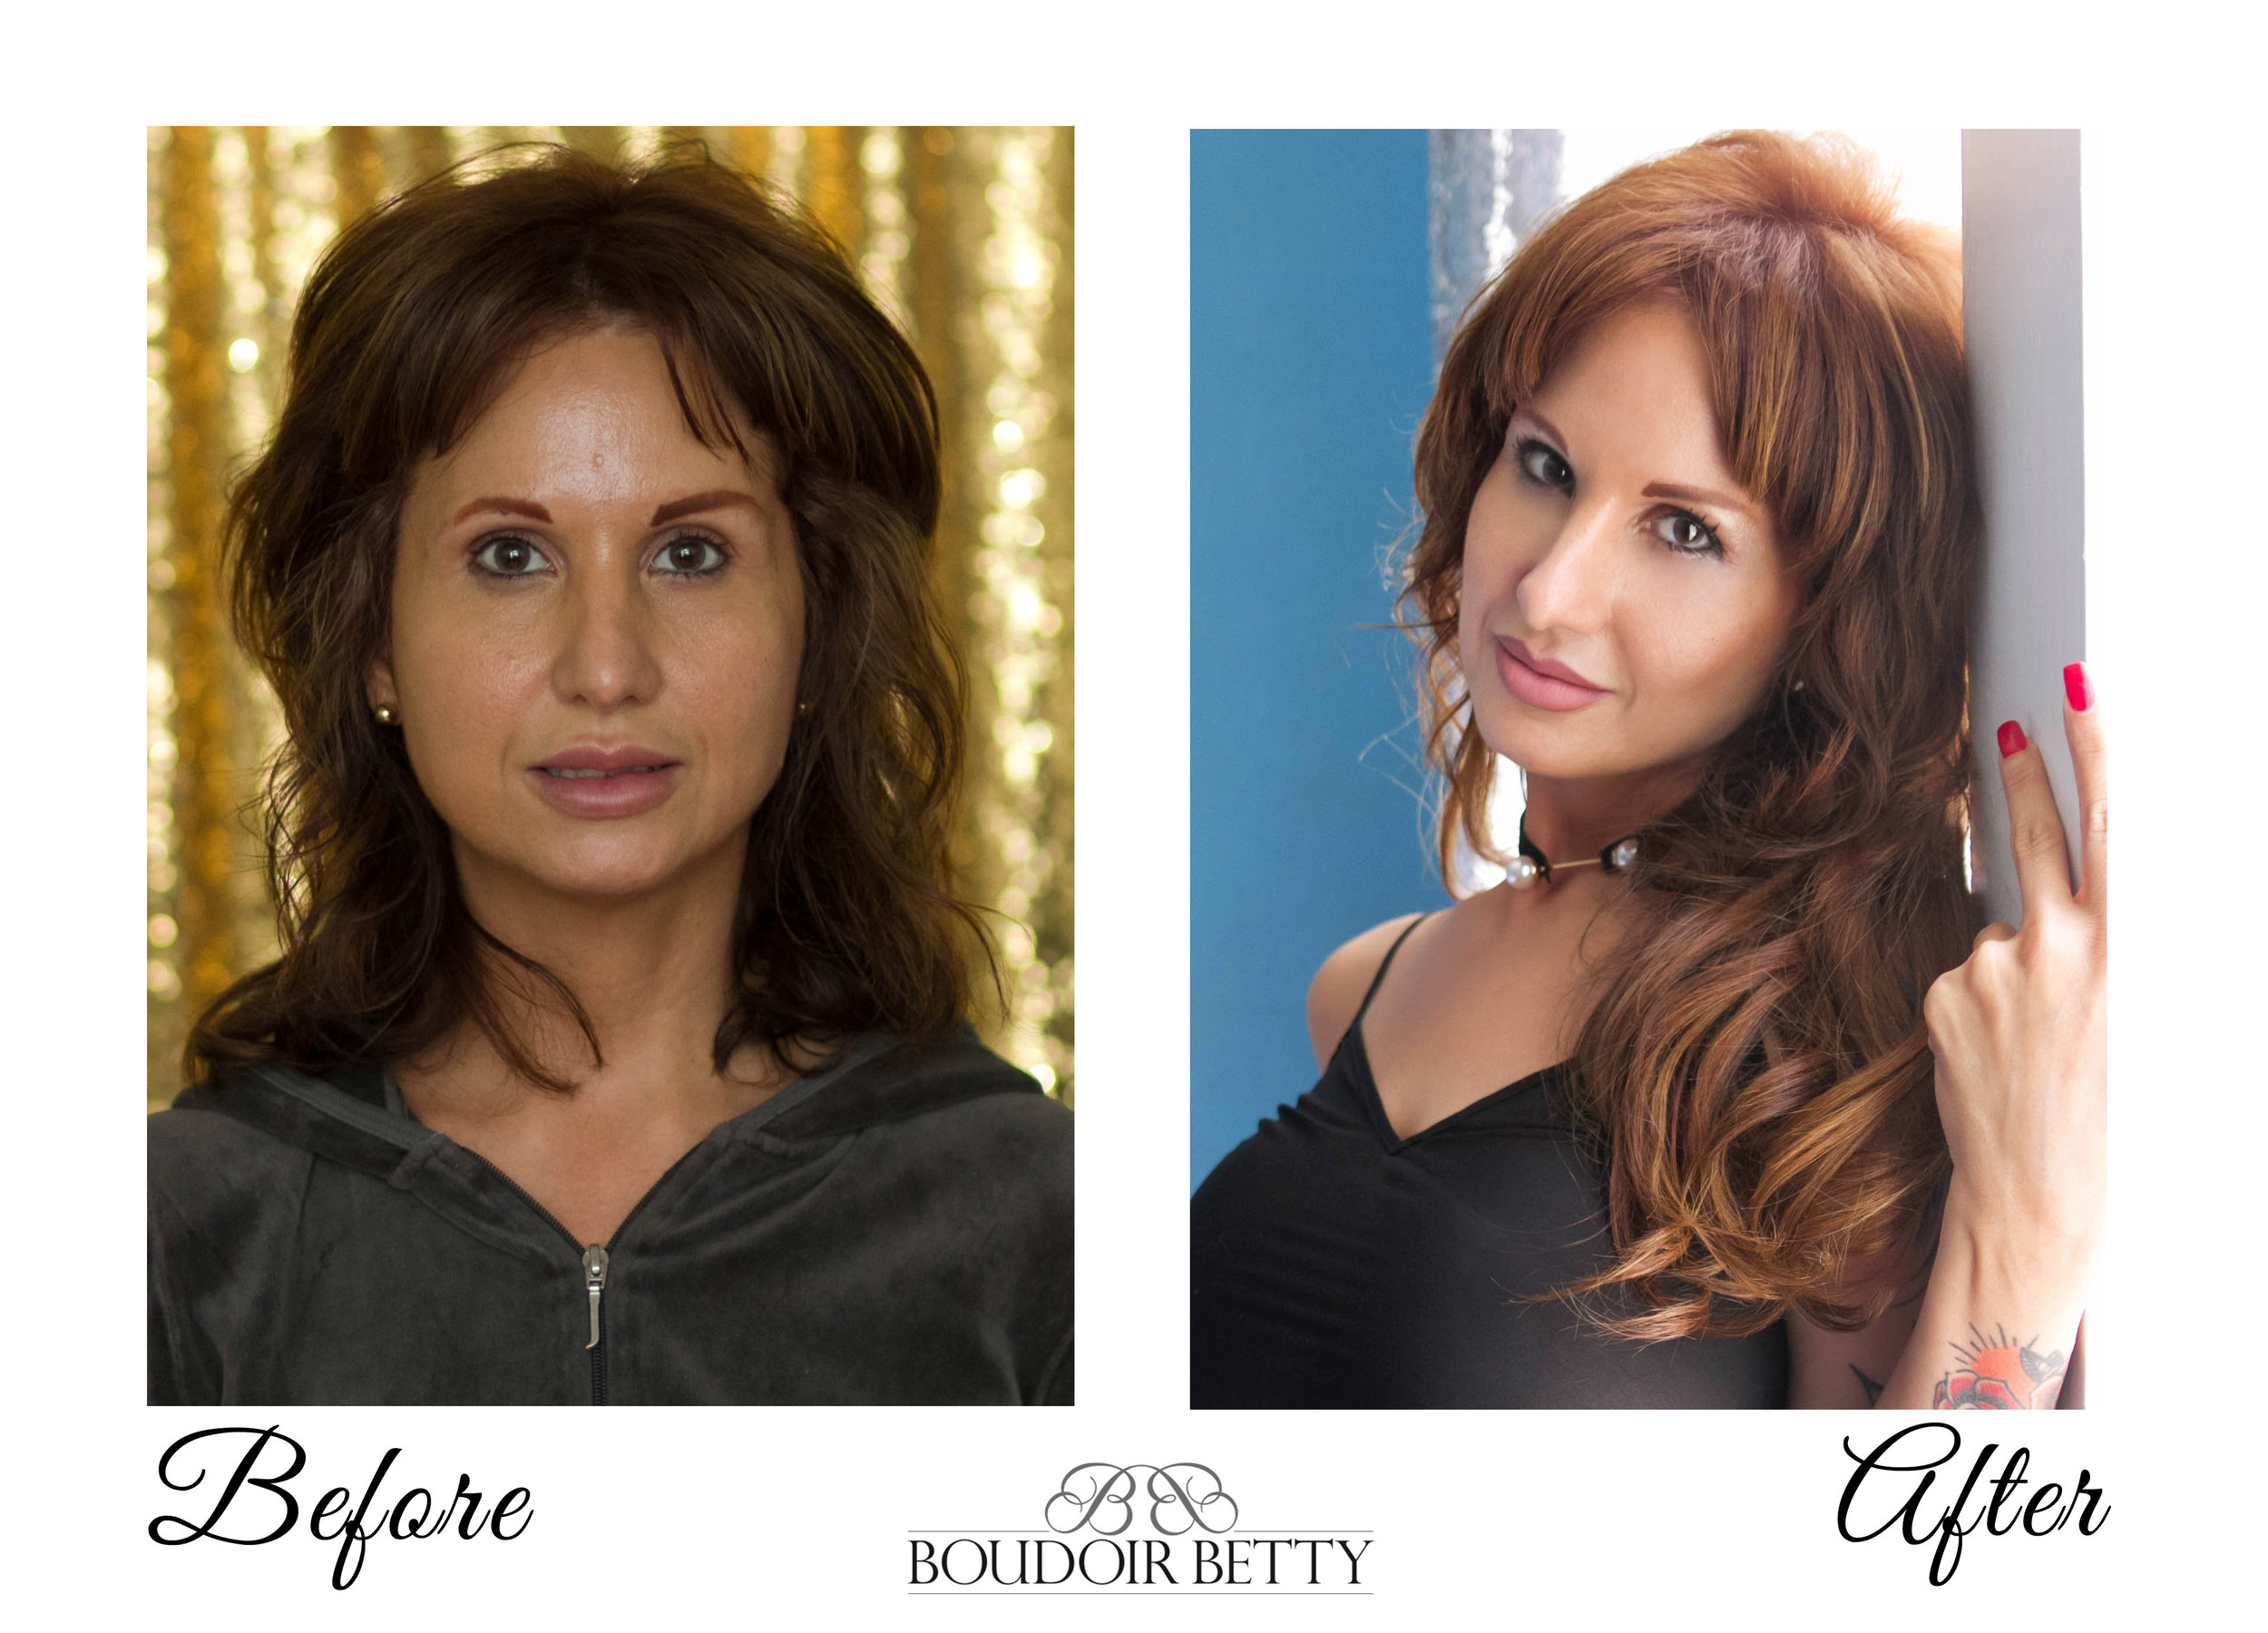  Hair Extensions help to create a glamorous look! Hair &amp; Make-up by Desirae Hirschman&nbsp; 